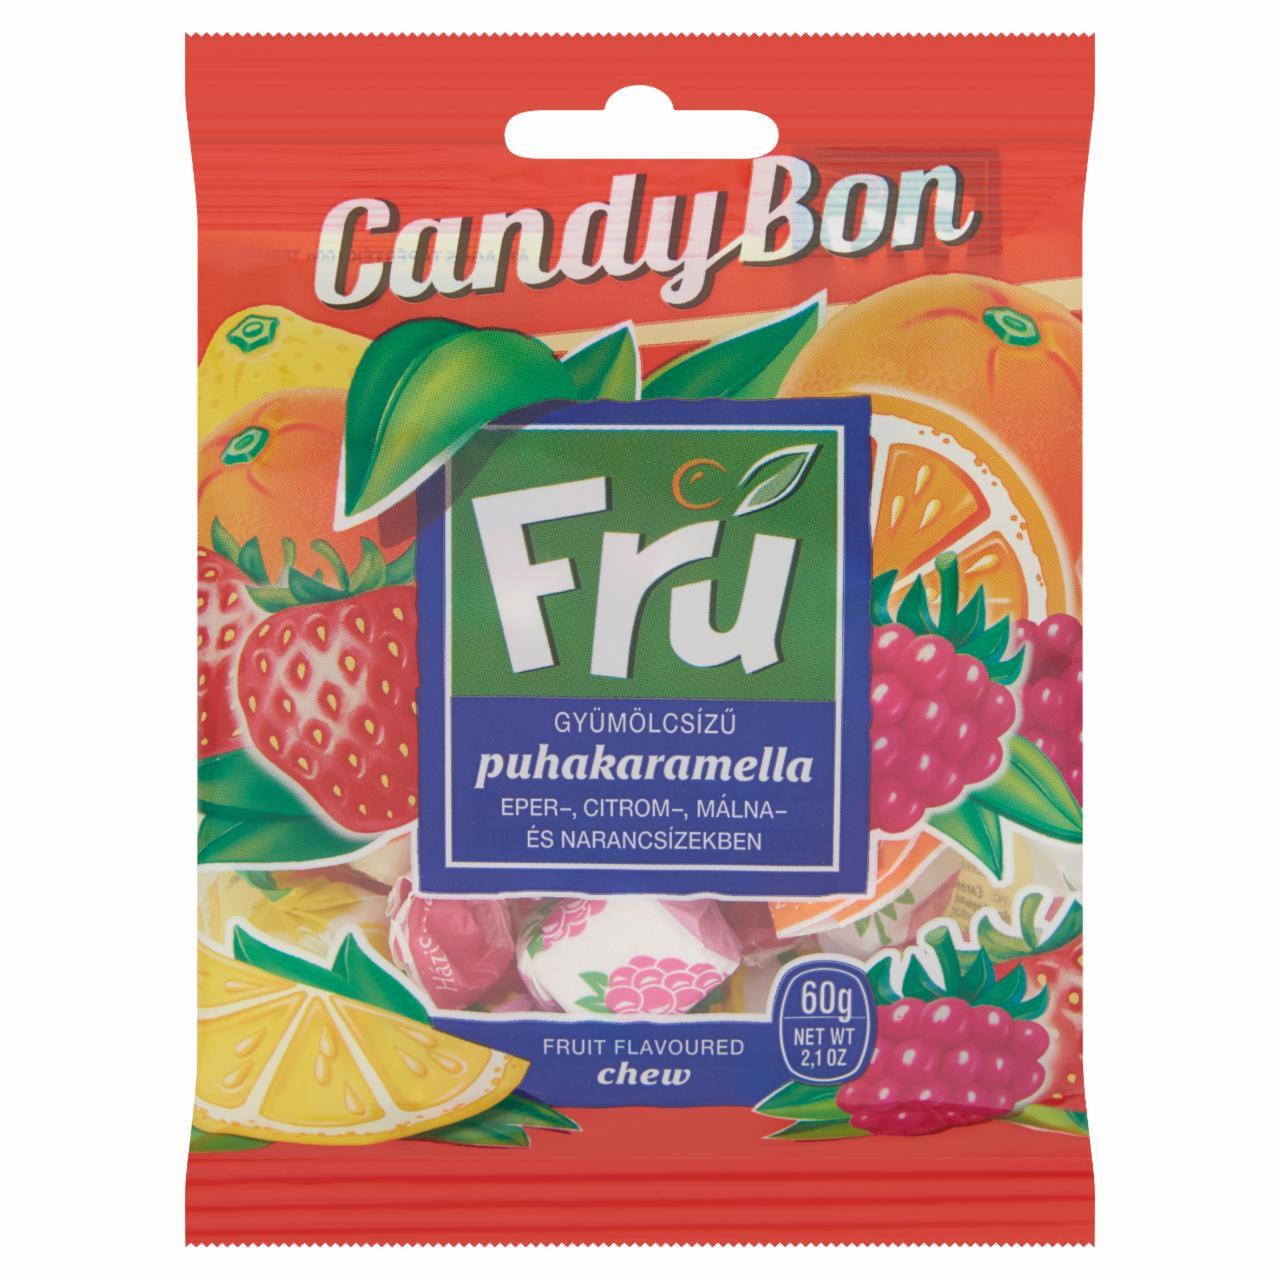 Képek - Candy Bon Fru gyümölcsízű puhakaramella eper-, citrom-, málna- és narancs ízekben 60 g